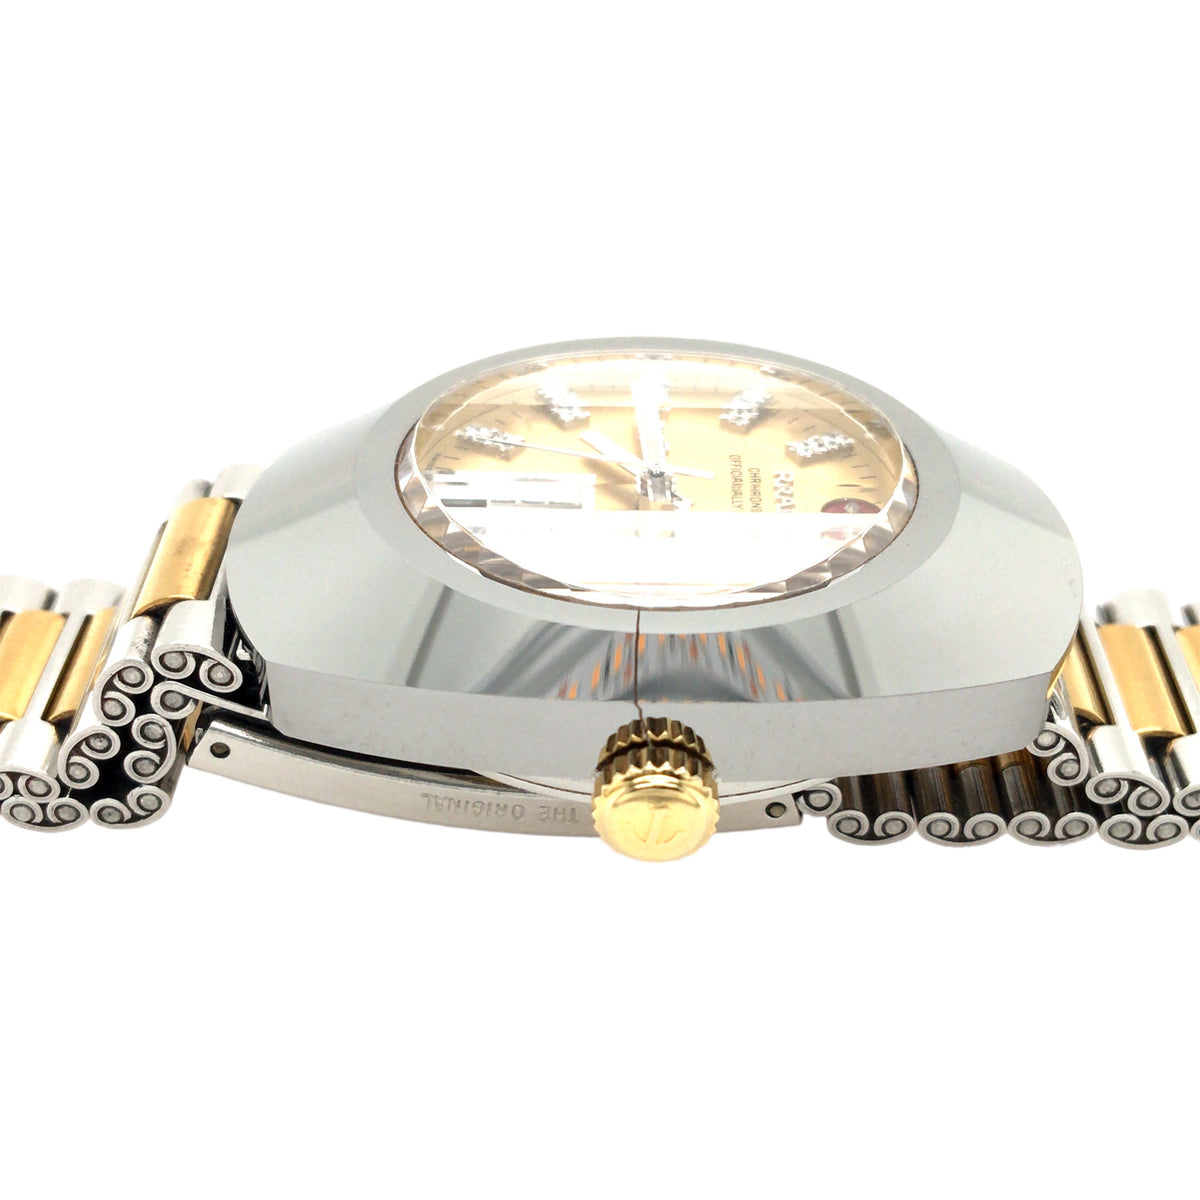 Rado Chronometer Diastar Jubilé Diamonds - Stahl - Limited Edition 0778/1999